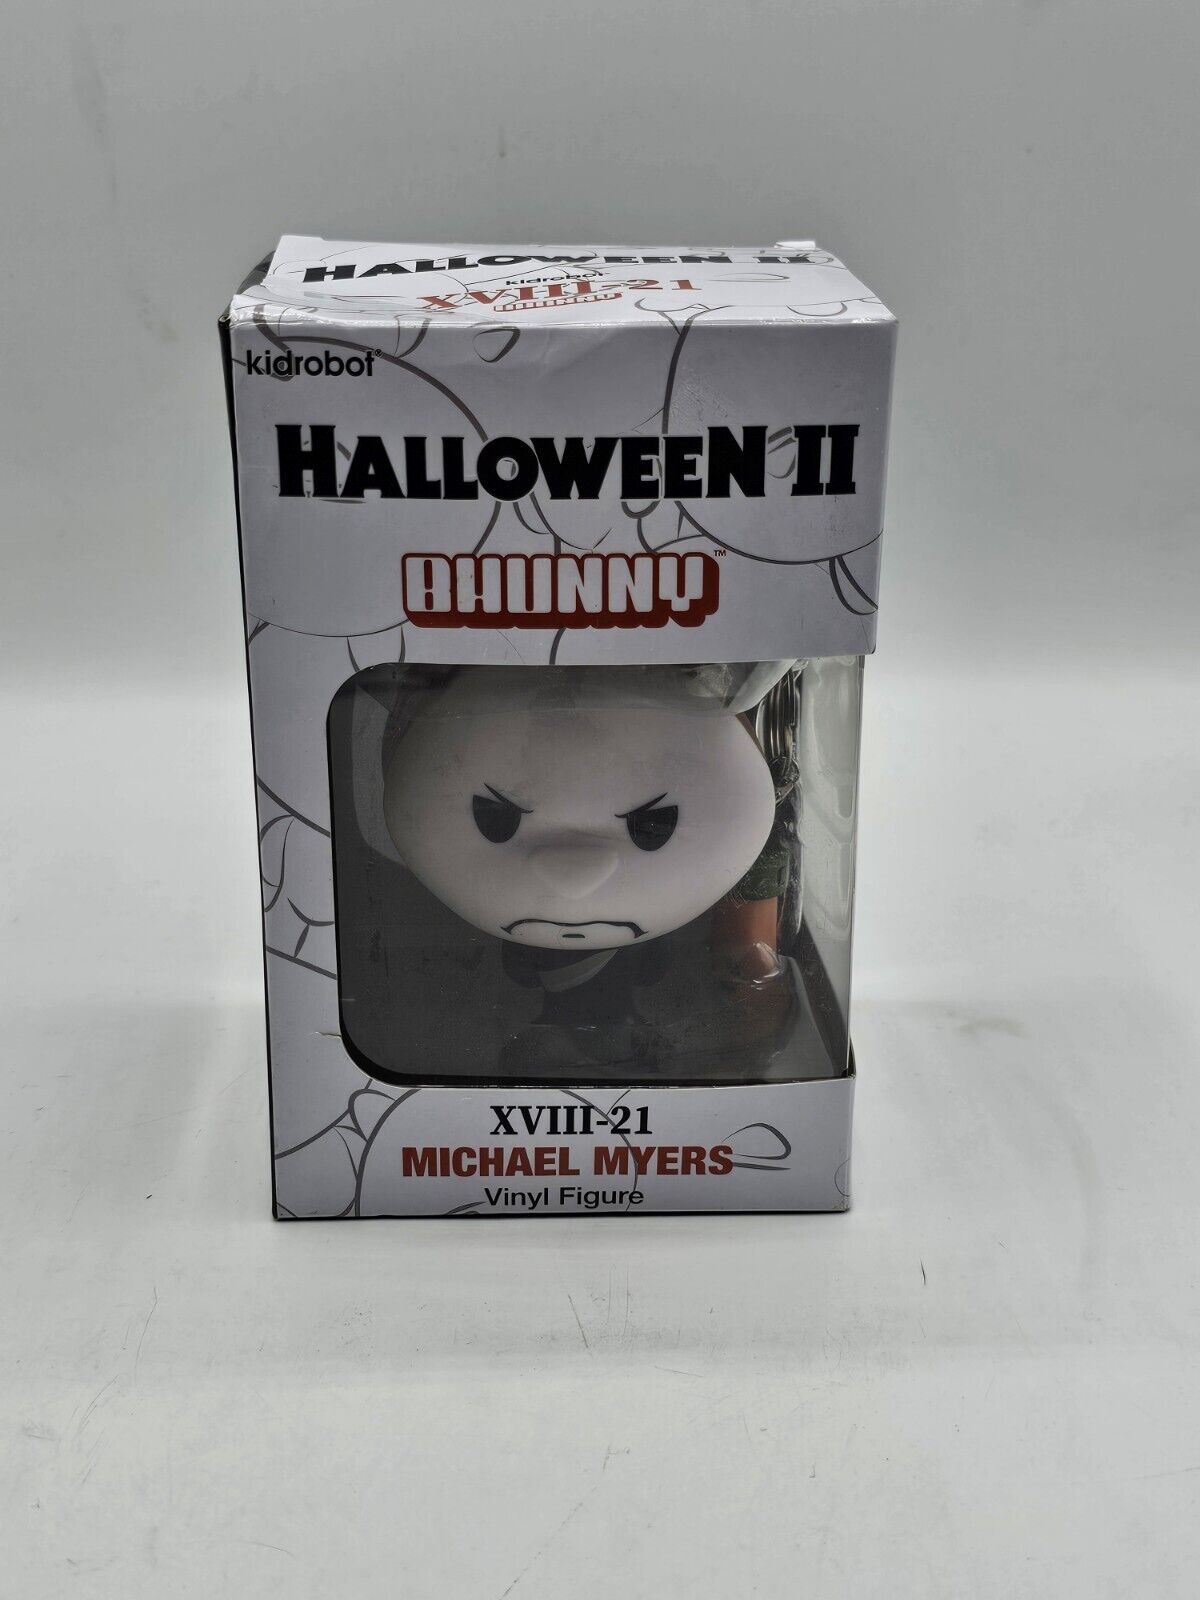 Kidrobot Halloween II: Michael Myers, BHUNNY XVIII-21  Vinyl Figure